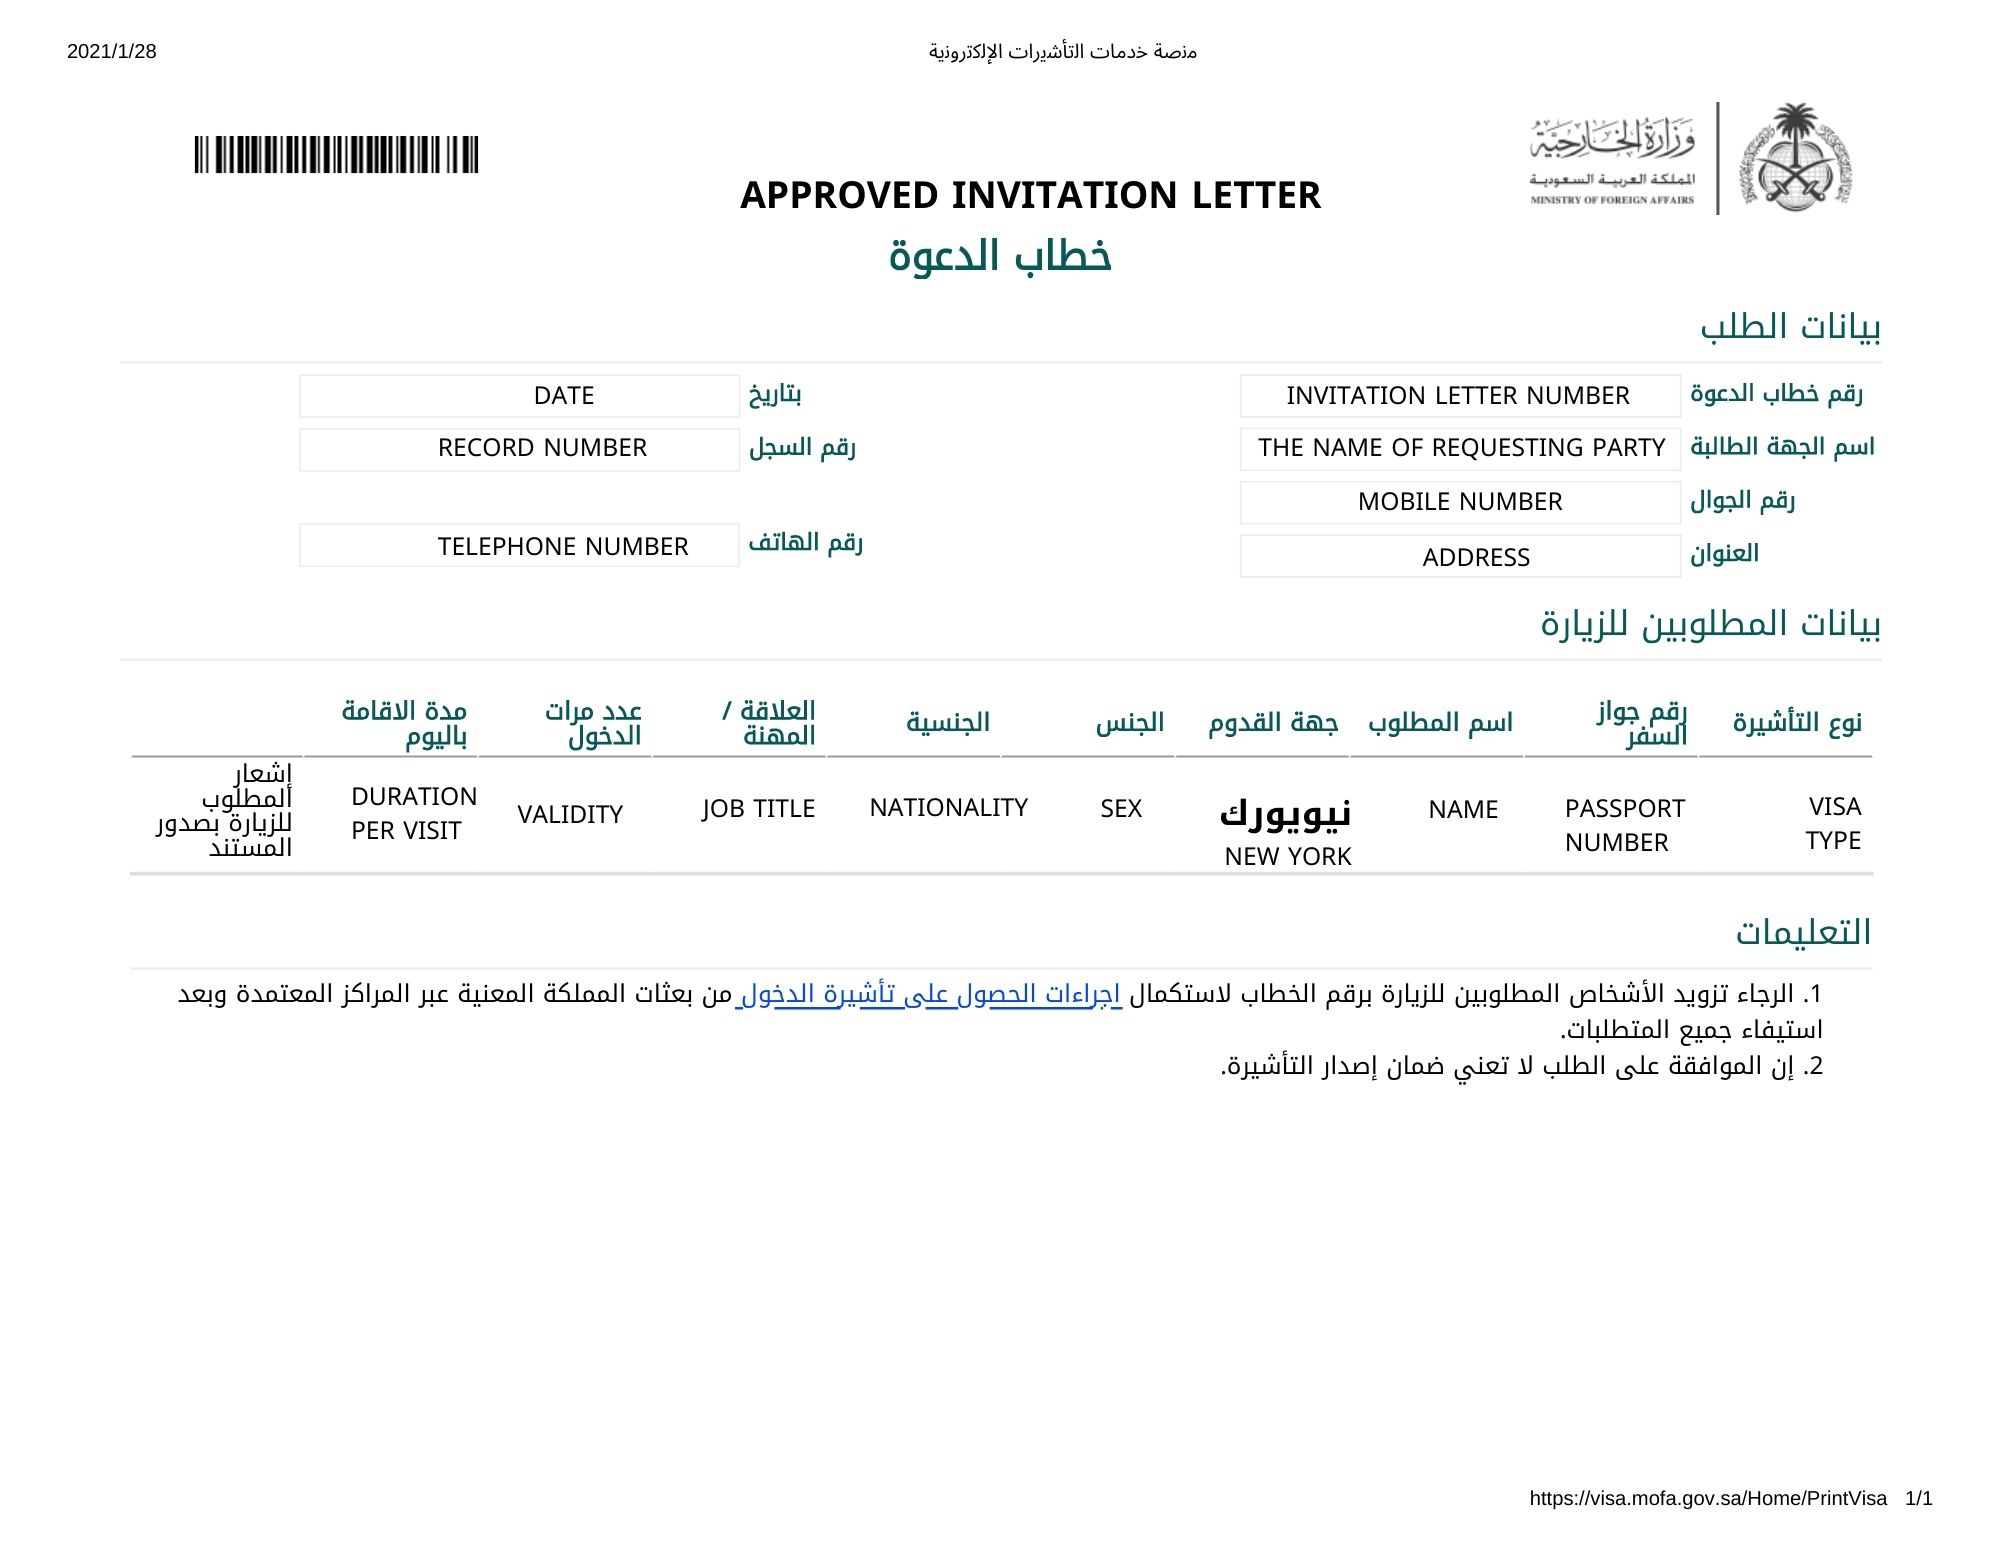 bahrain visit visa from saudi arabia